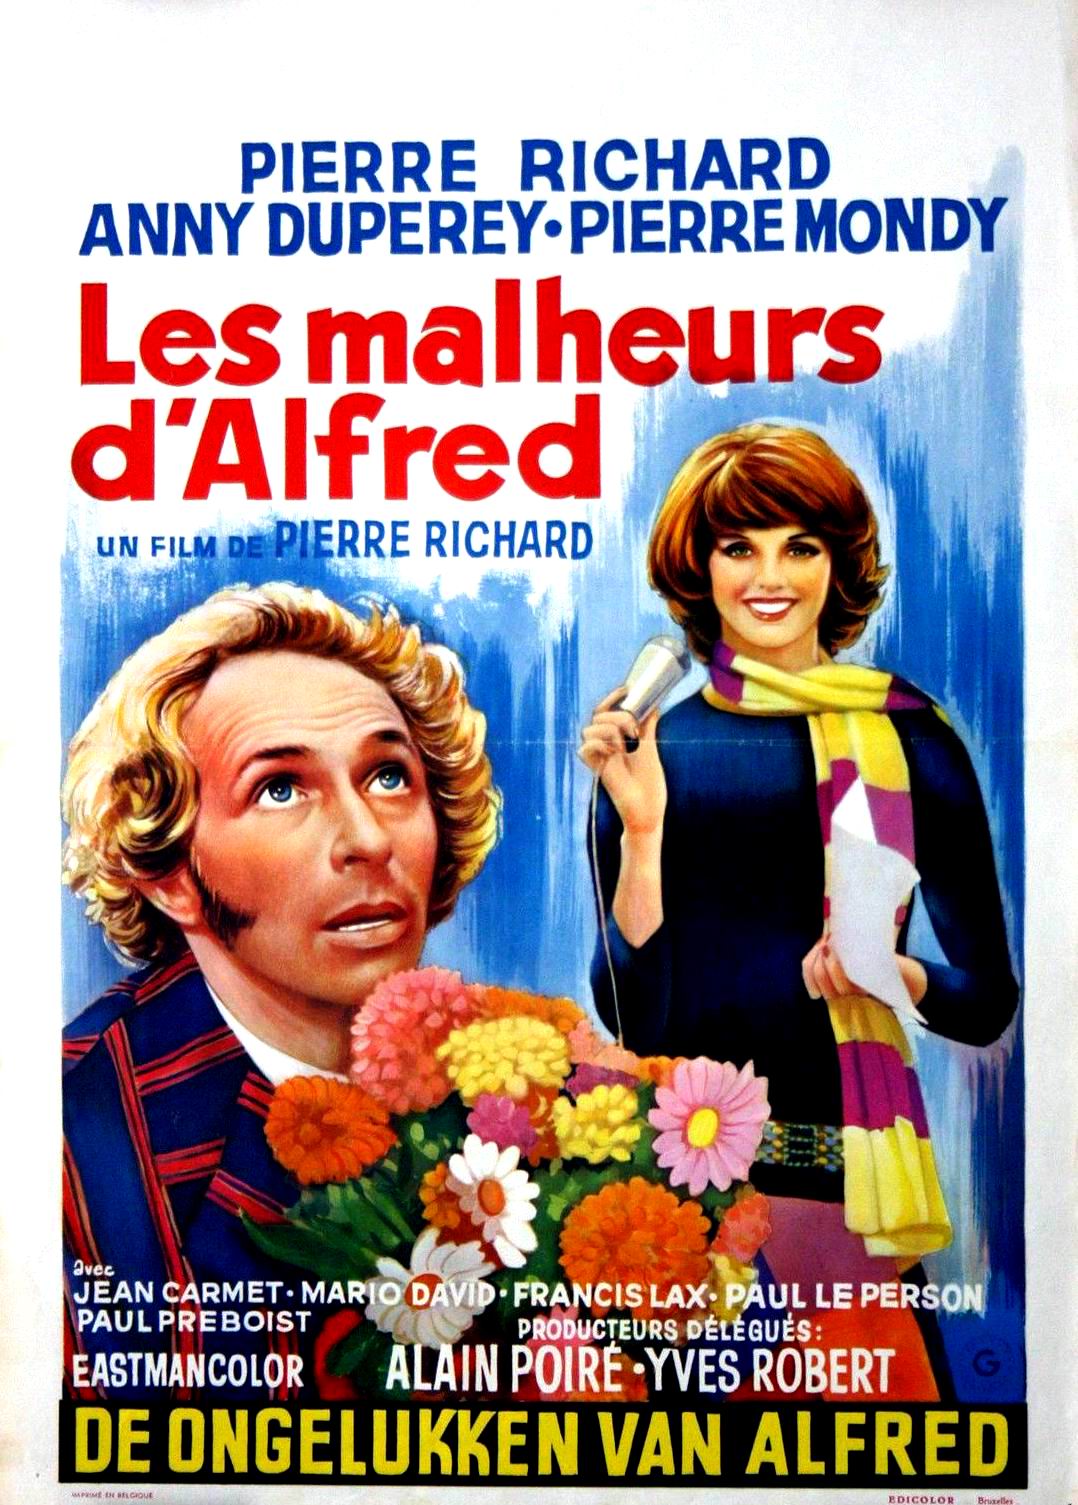 Les malheurs d'Alfred (1971) Pierre Richard - Les malheurs d'Alfred